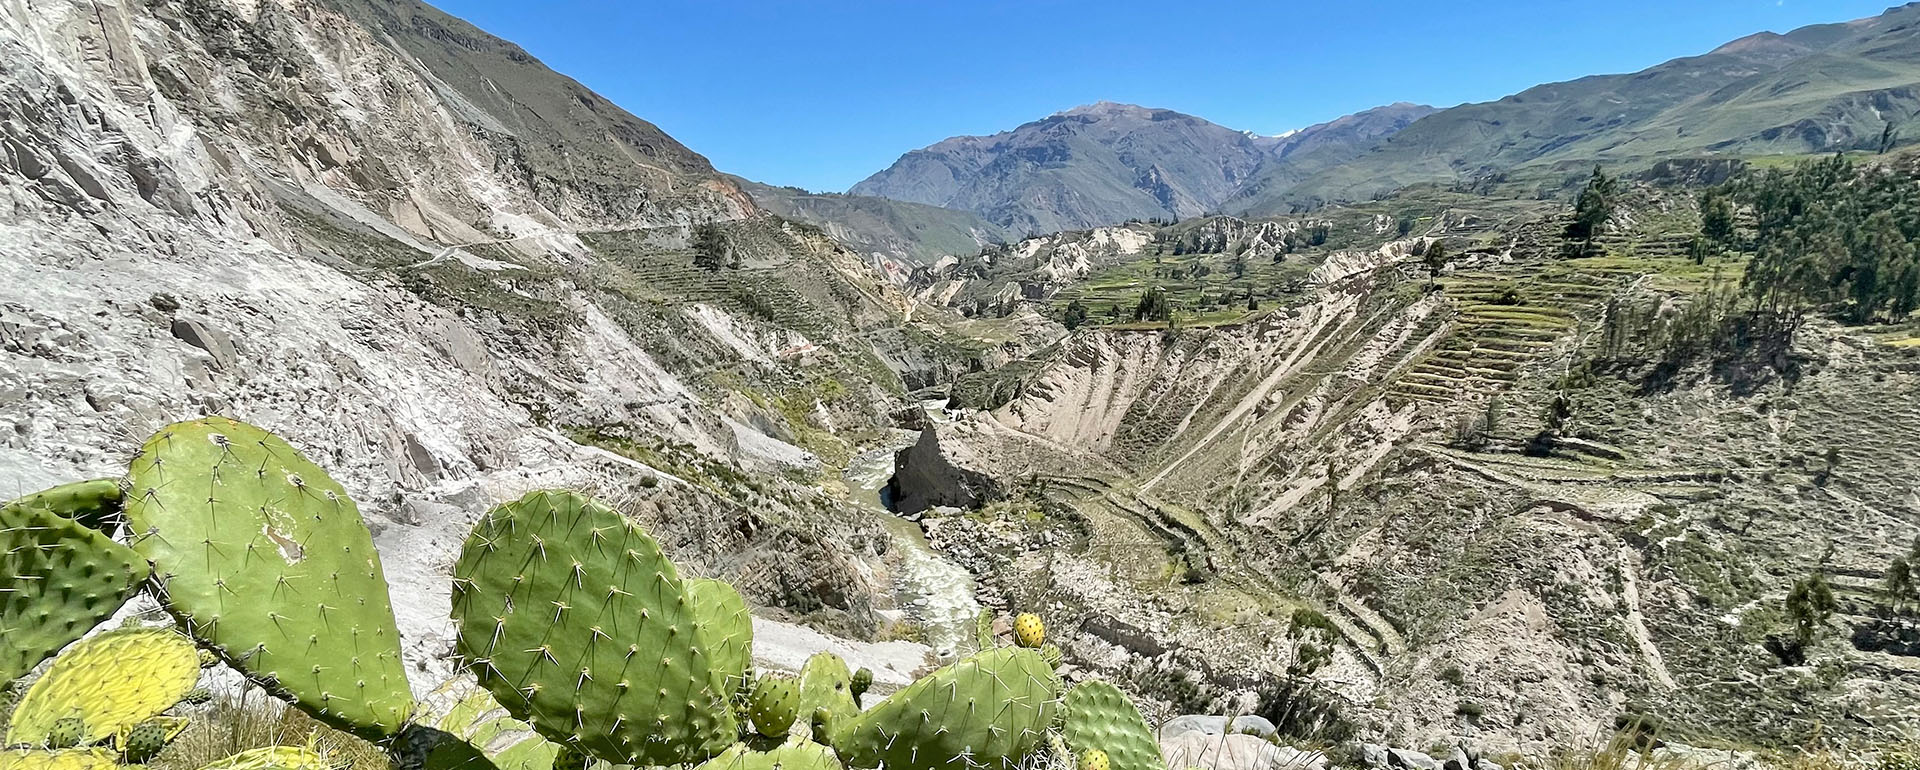 MTB-Reise Peru